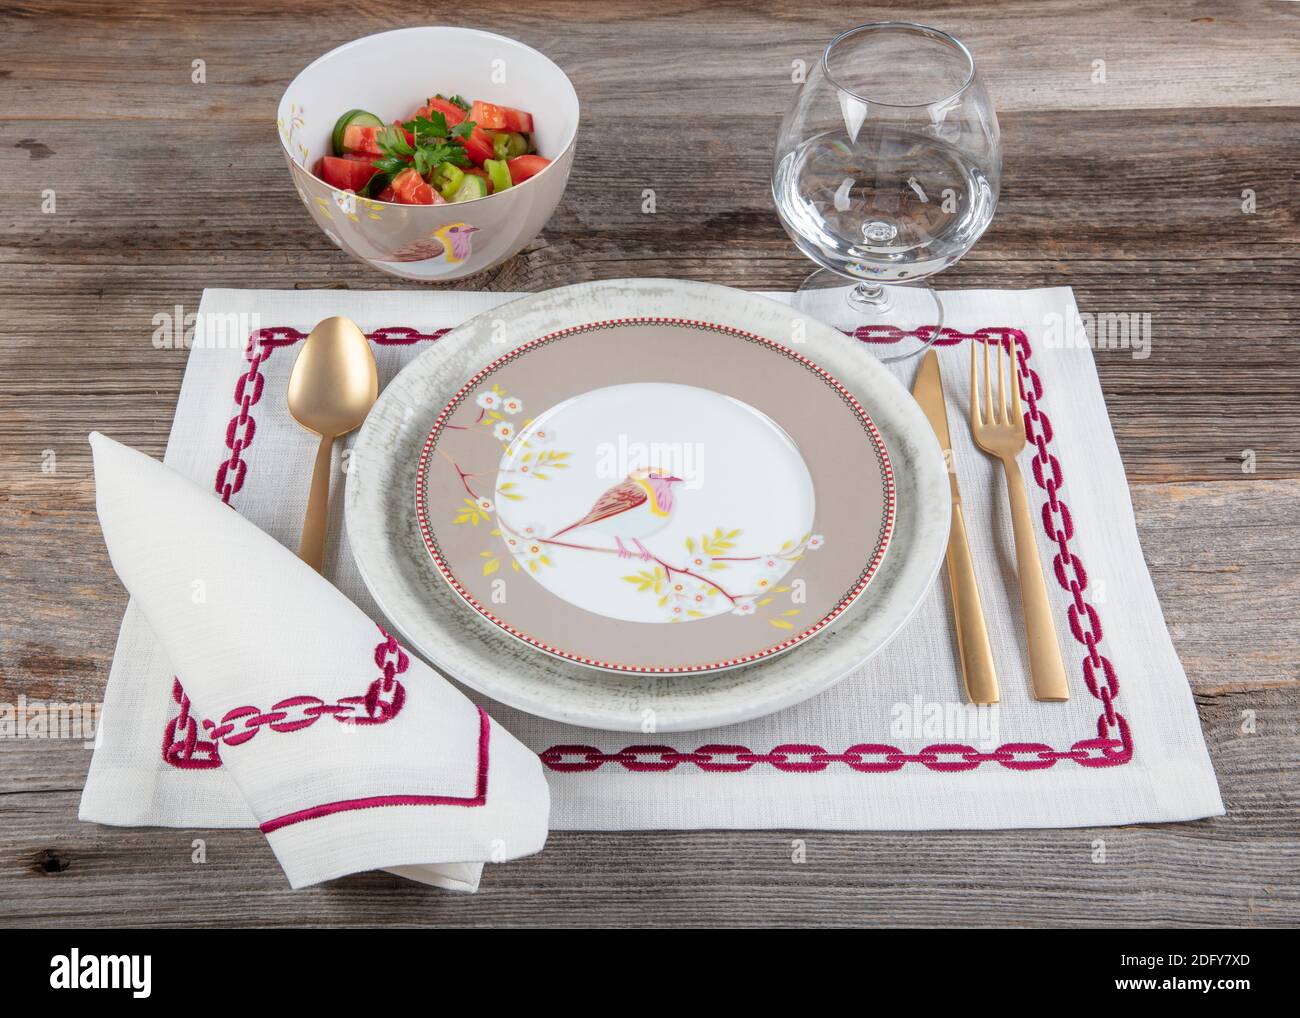 Plat Lay moderne fête table de mise avec assiette, fourchette, couteau, et  cuillère. Assiettes en céramique, couverts et serviettes en lin. Concept  dîner des fêtes Photo Stock - Alamy